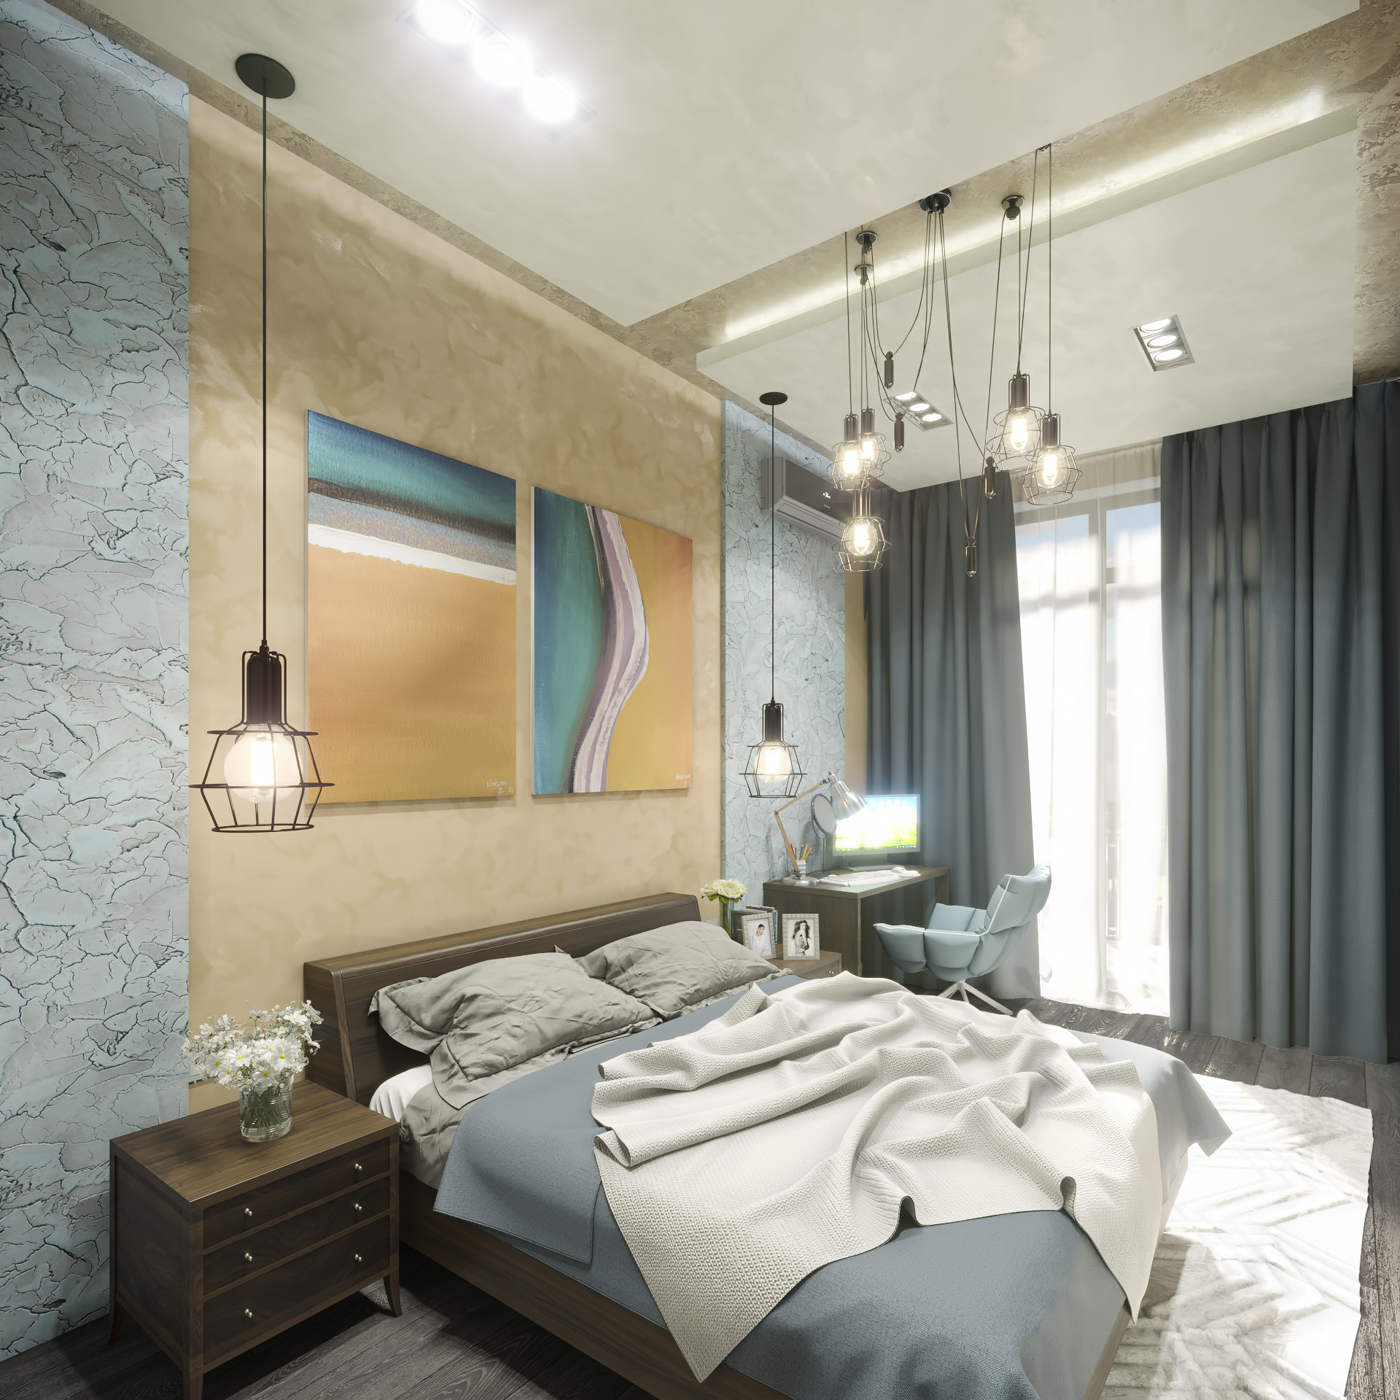 Дизайн спальни Киев современный стиль, модерн, покраска, декоративная штукатурка, интересные идеи, подсветка, картины декор над кроватью